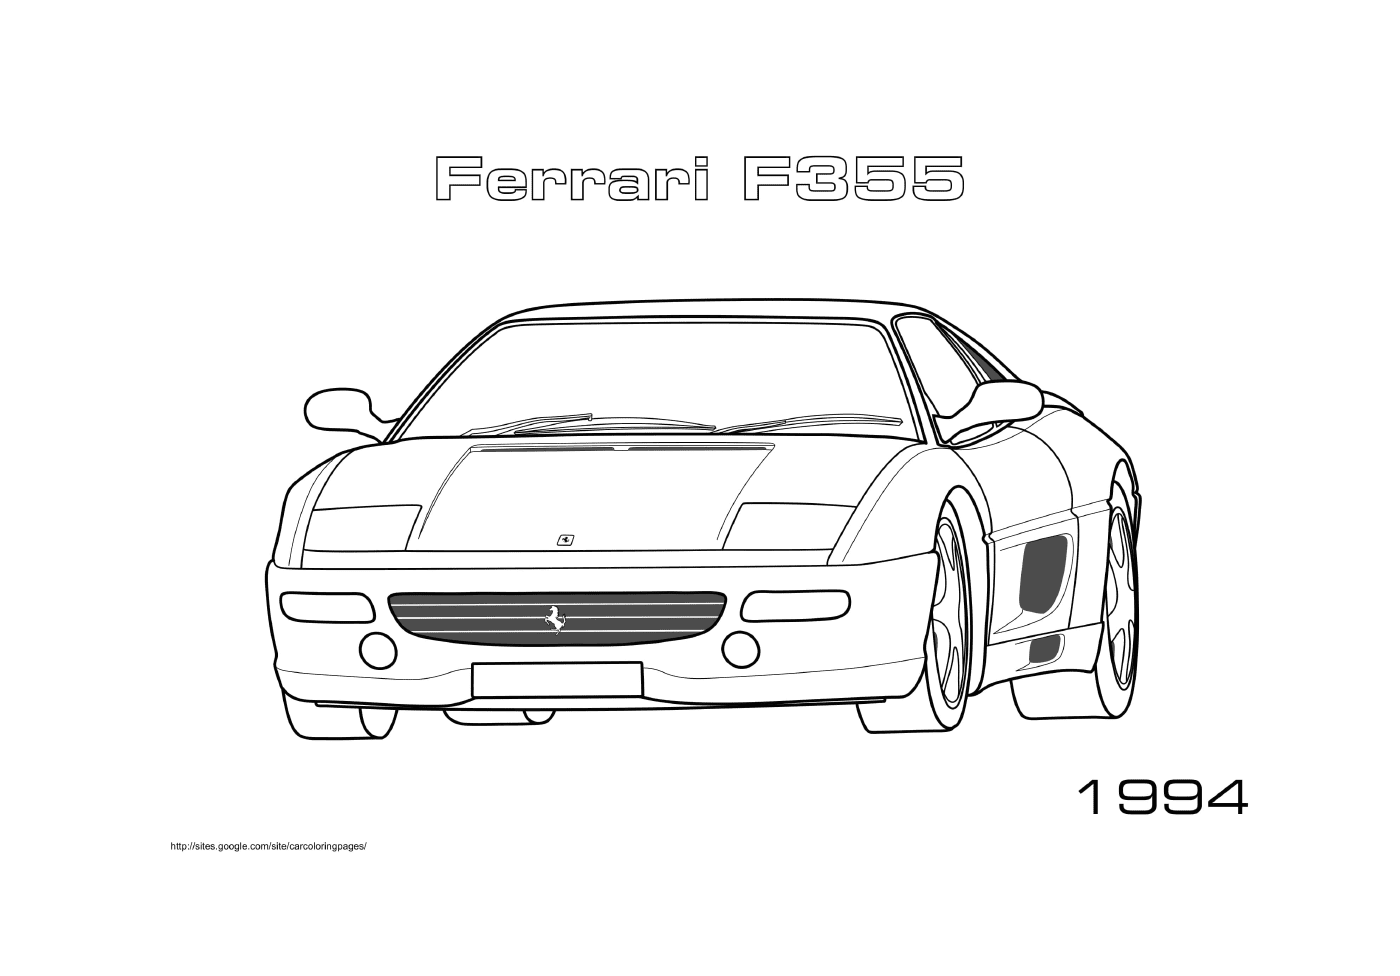  A Ferrari F355 1994 car 